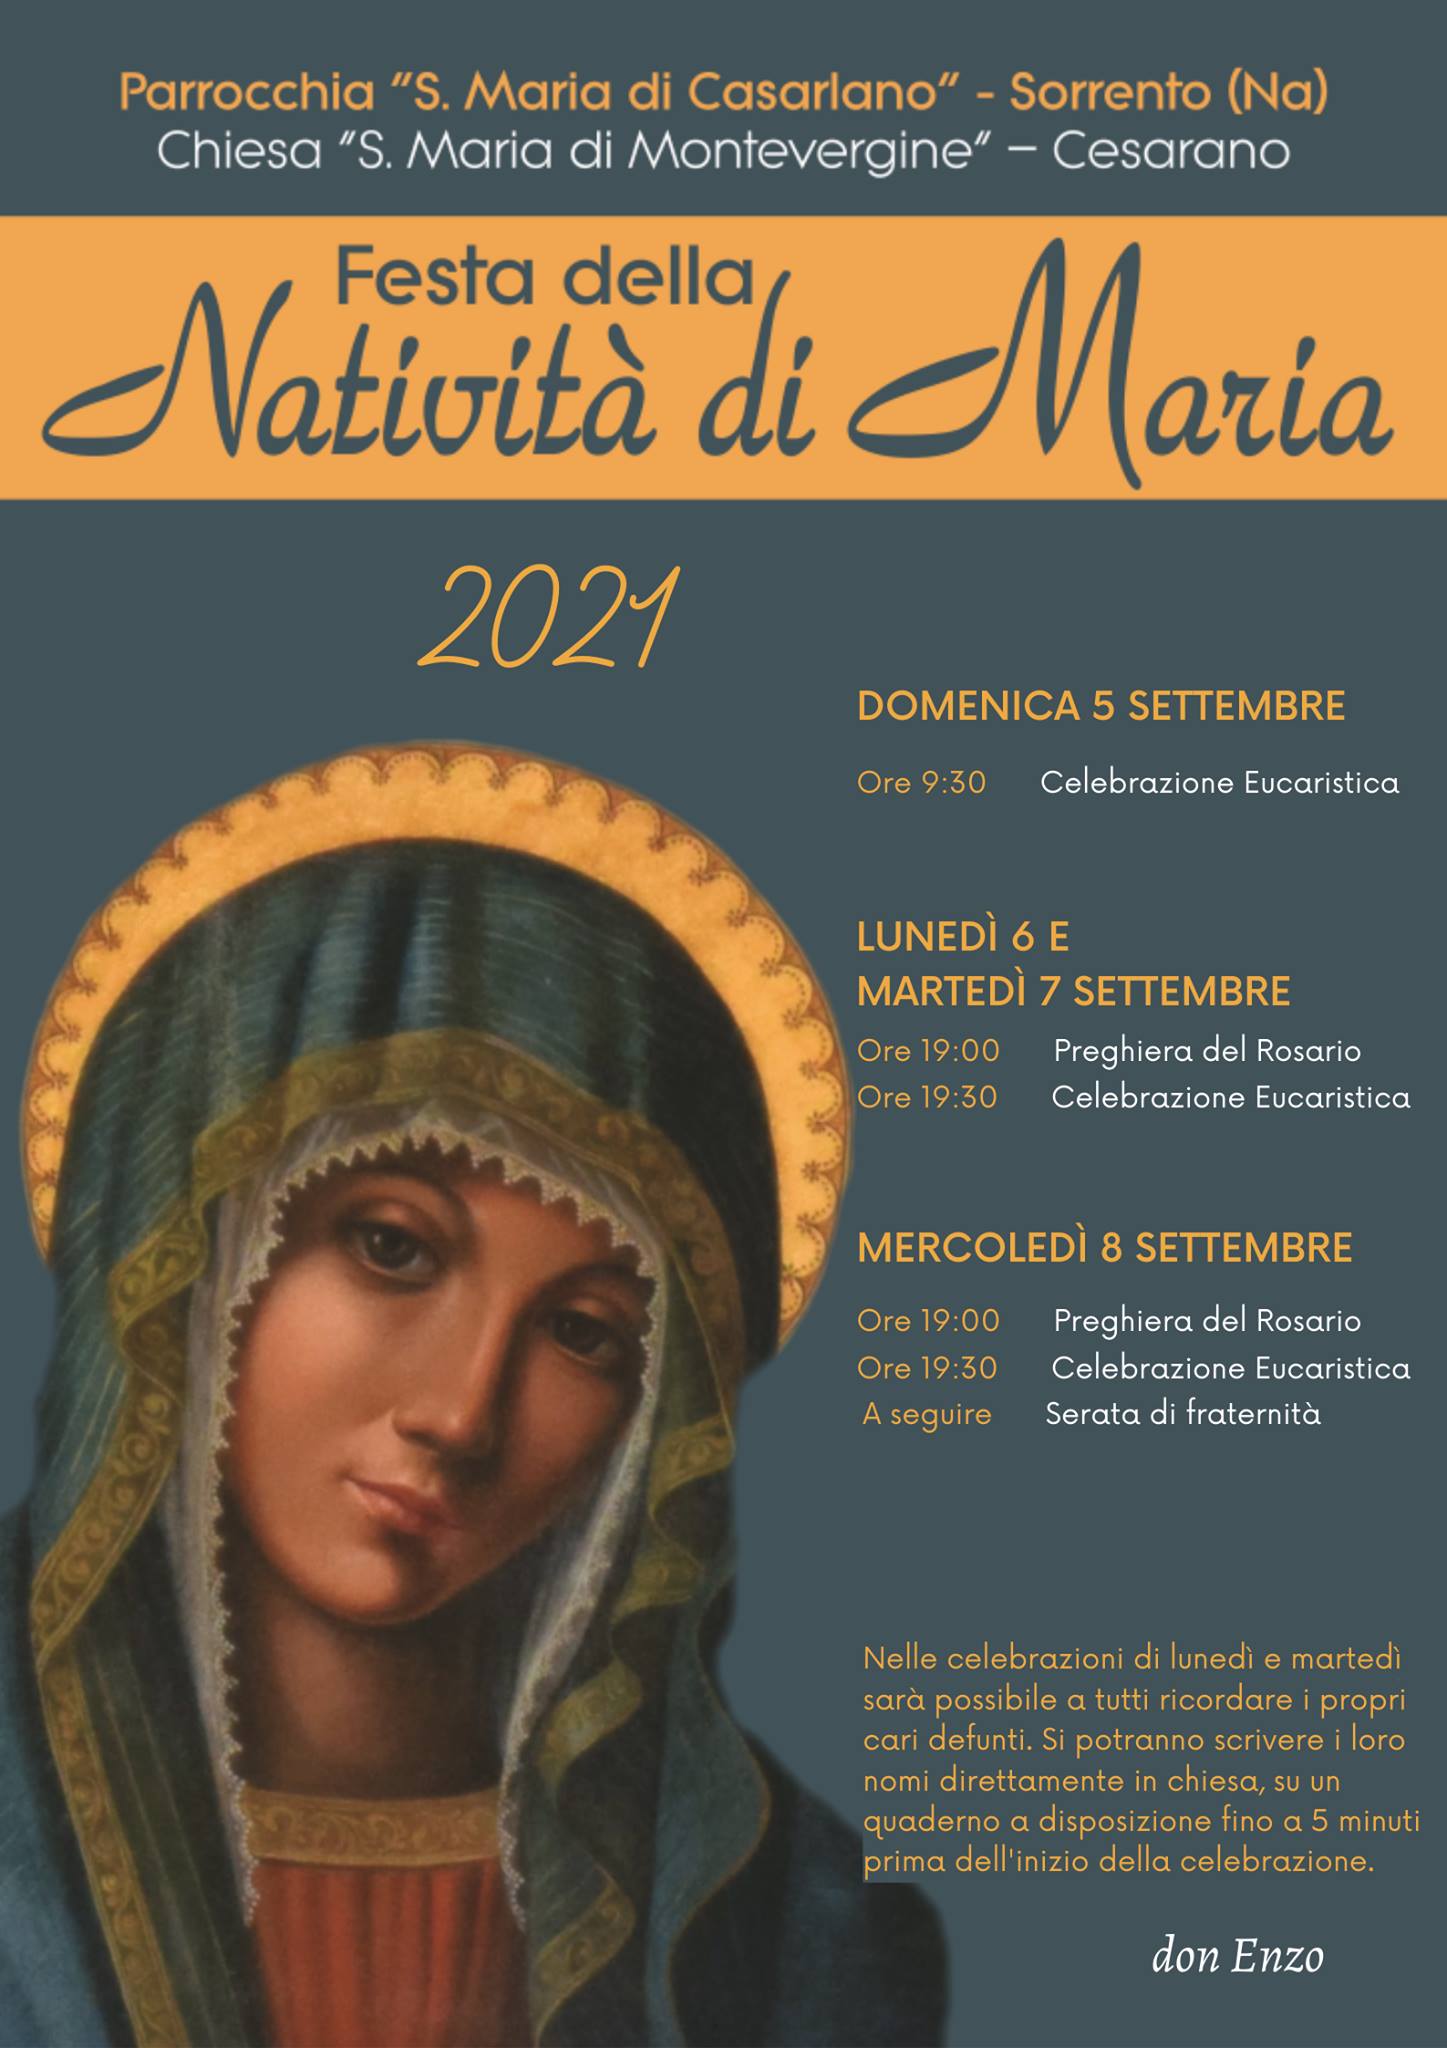 Festa della Natività di Maria - S. Maria di Montevergine - Cesarano